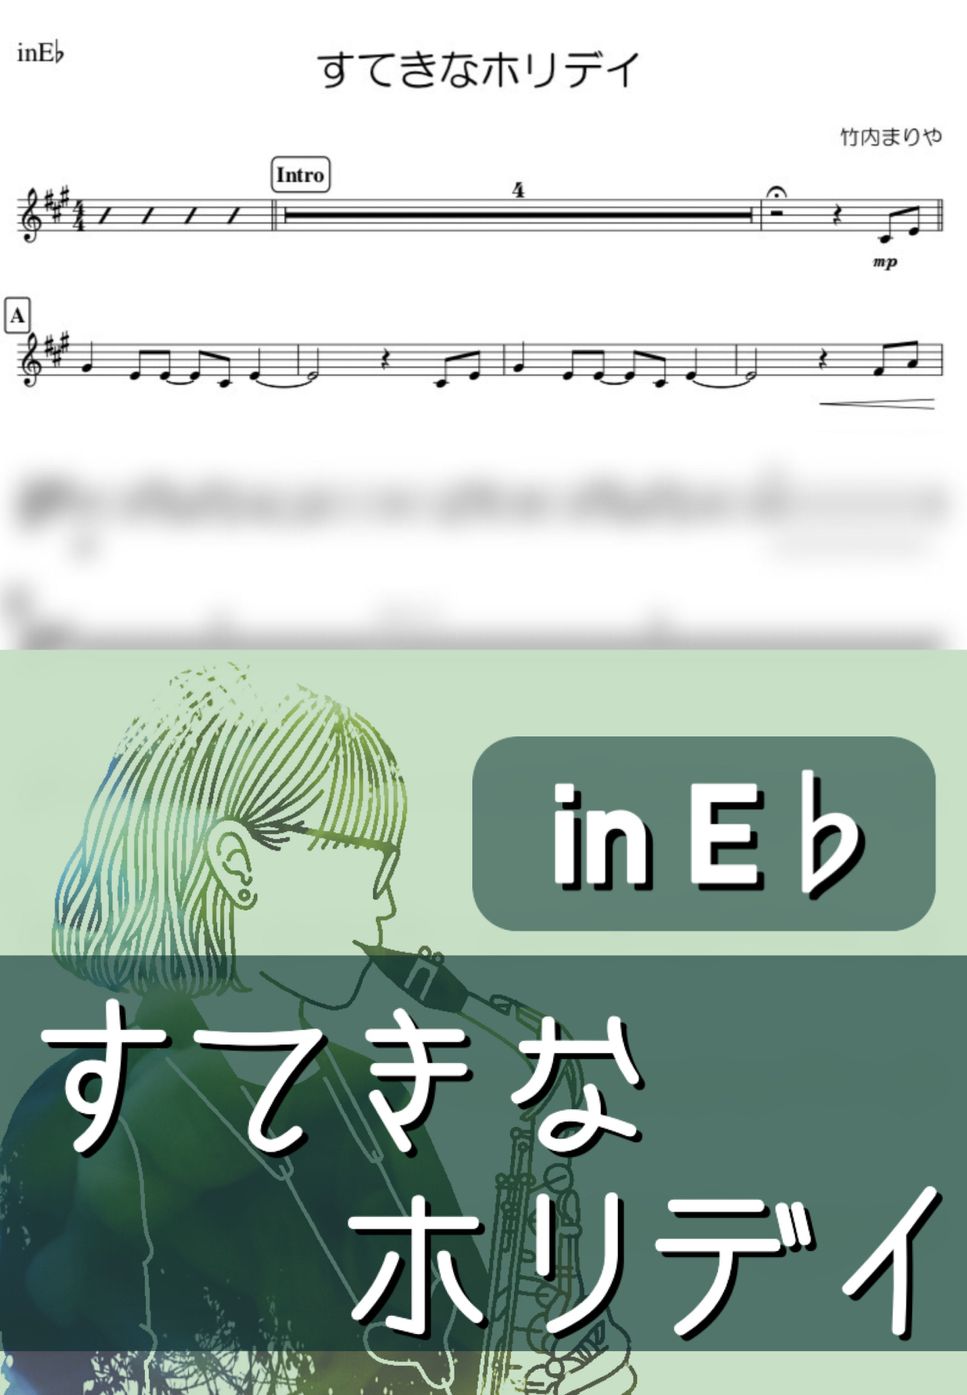 竹内まりや - すてきなホリデイ (E♭) by kanamusic